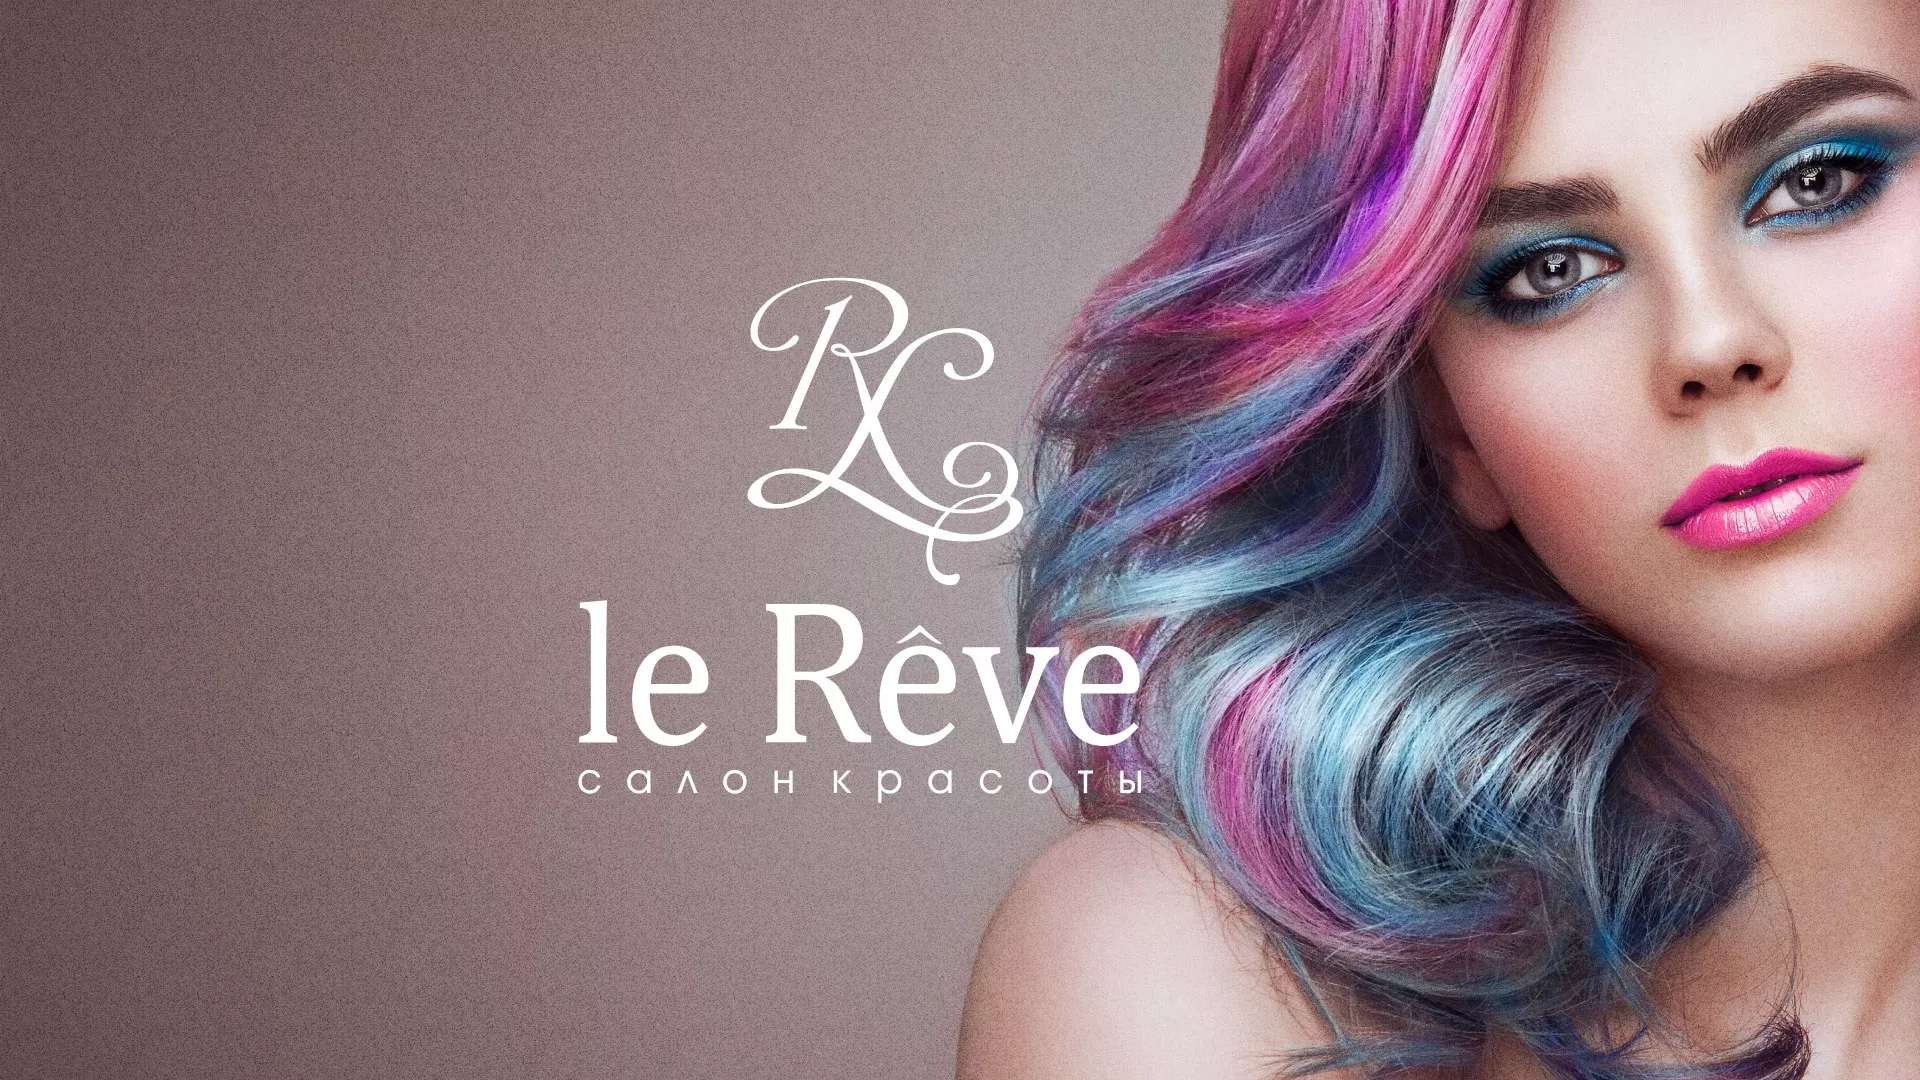 Создание сайта для салона красоты «Le Reve» в Соль-Илецке